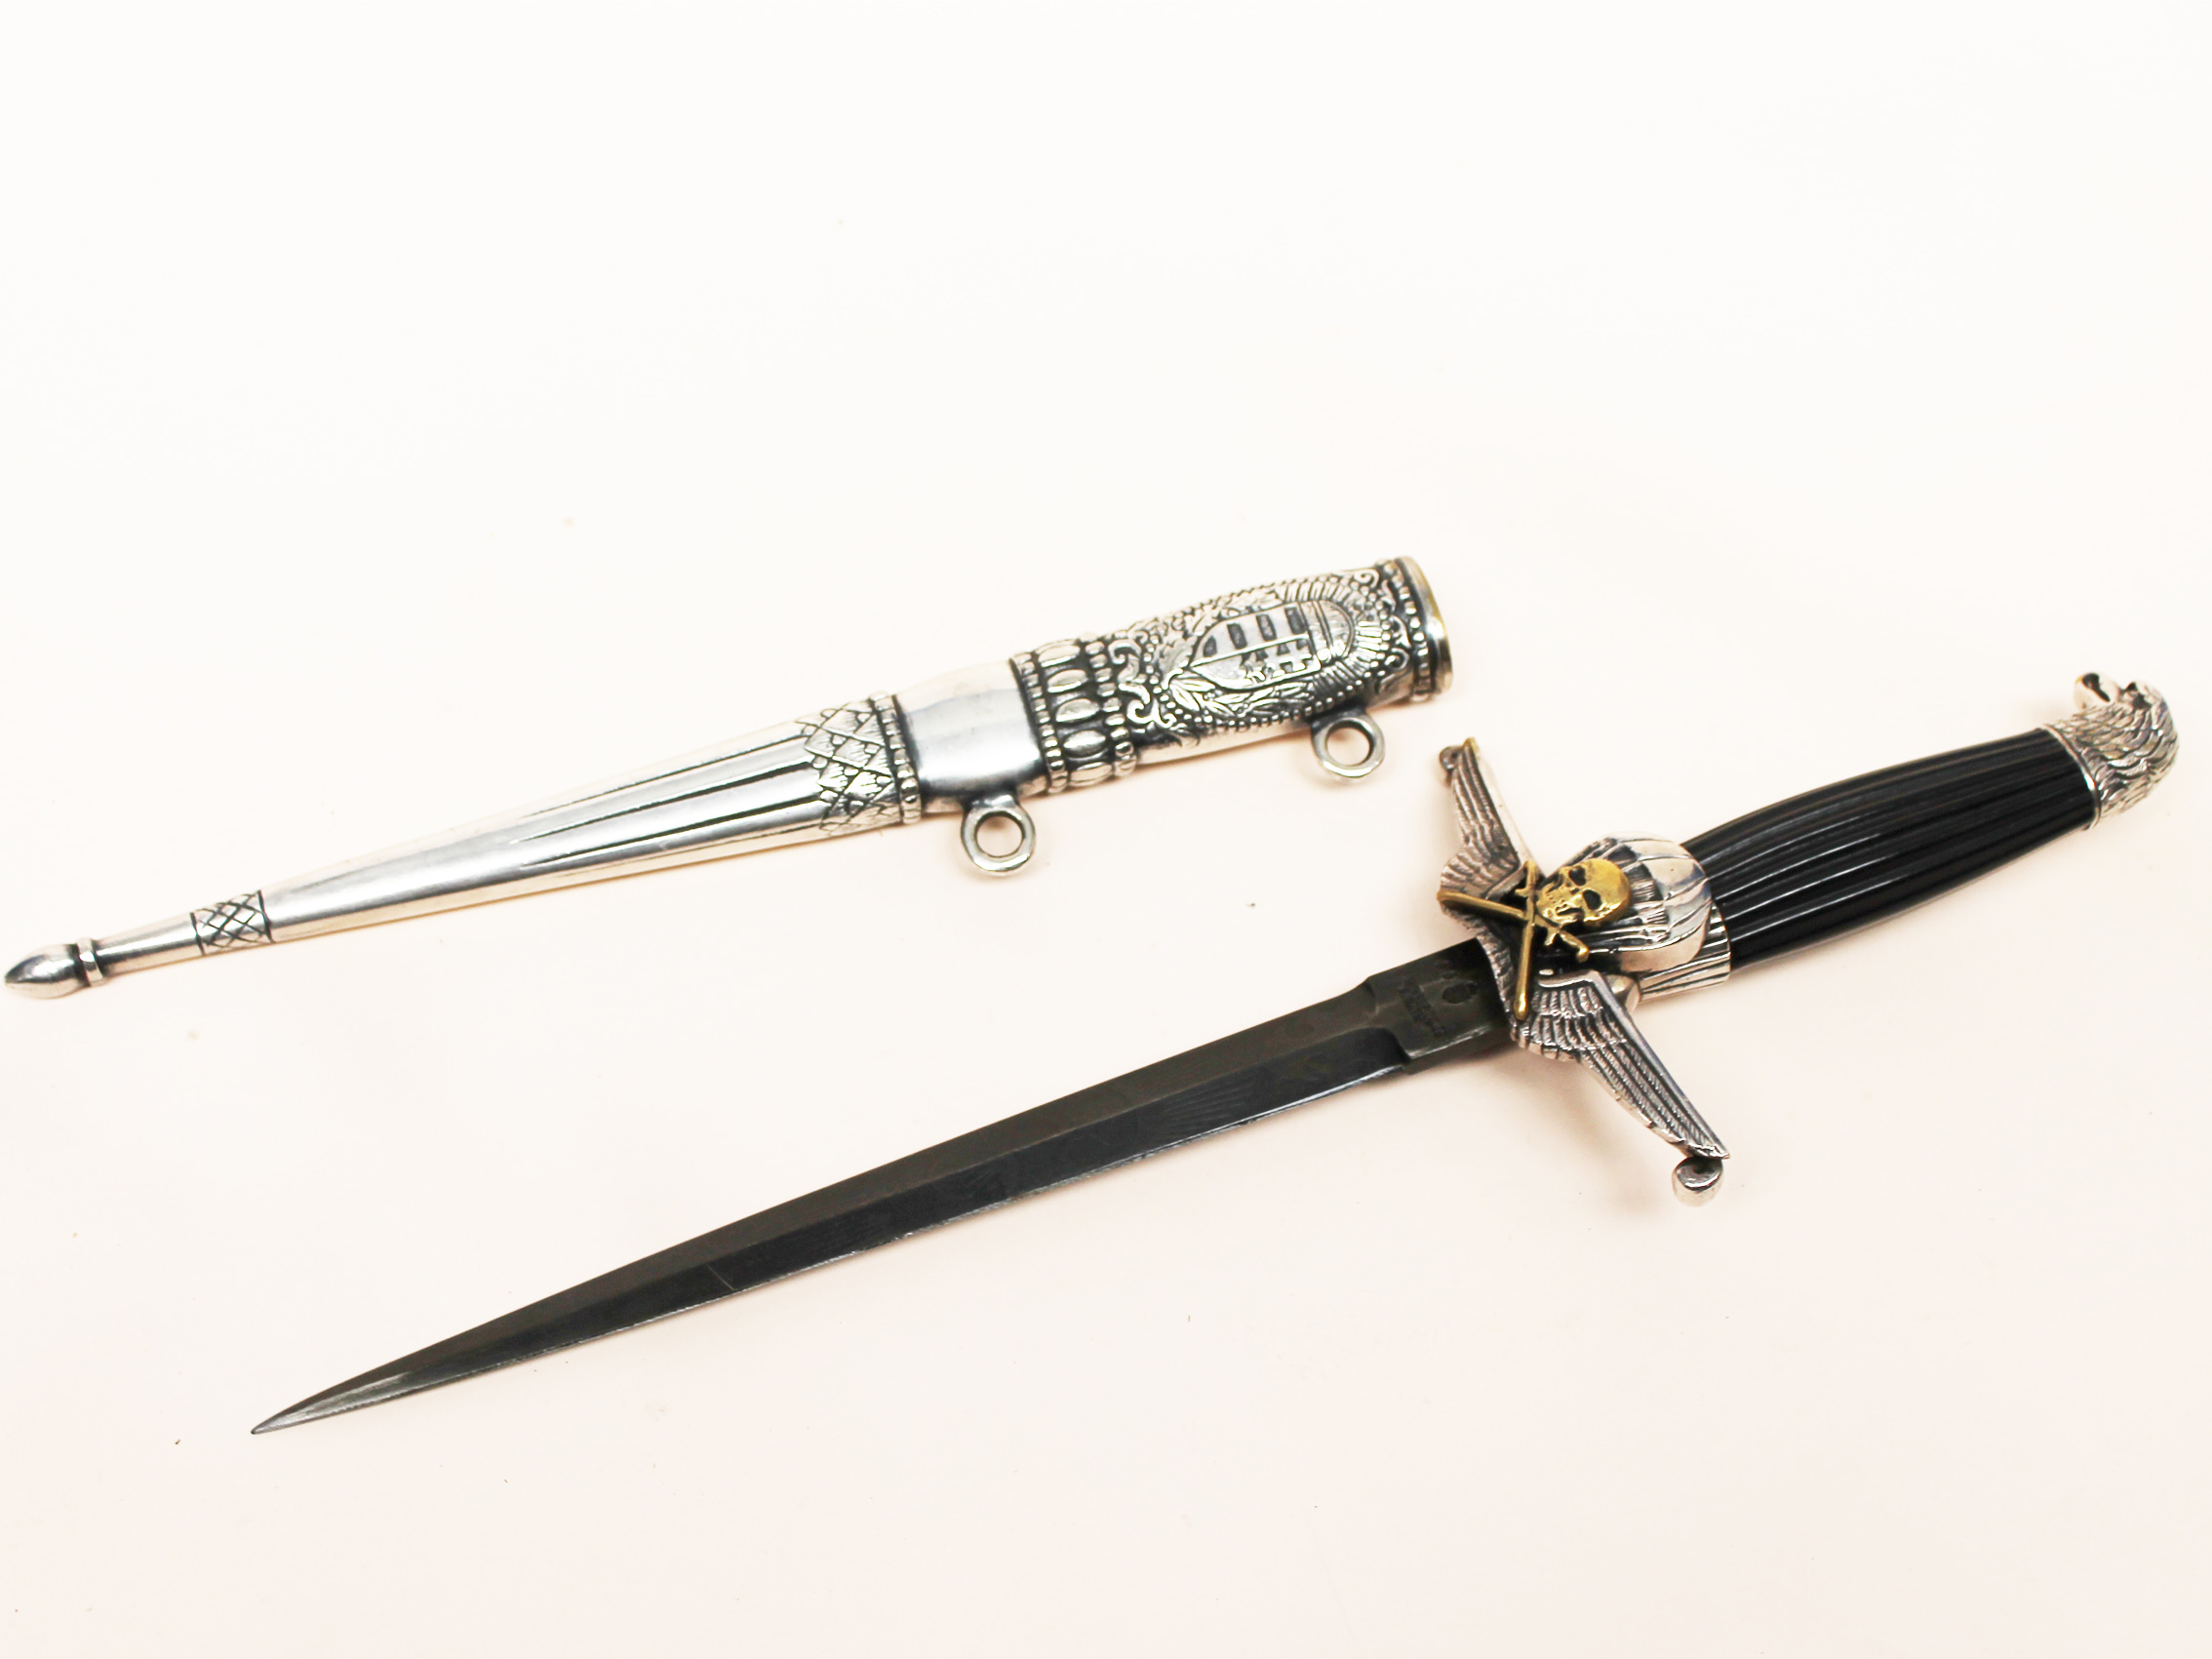 A reproduction dagger. L36cm